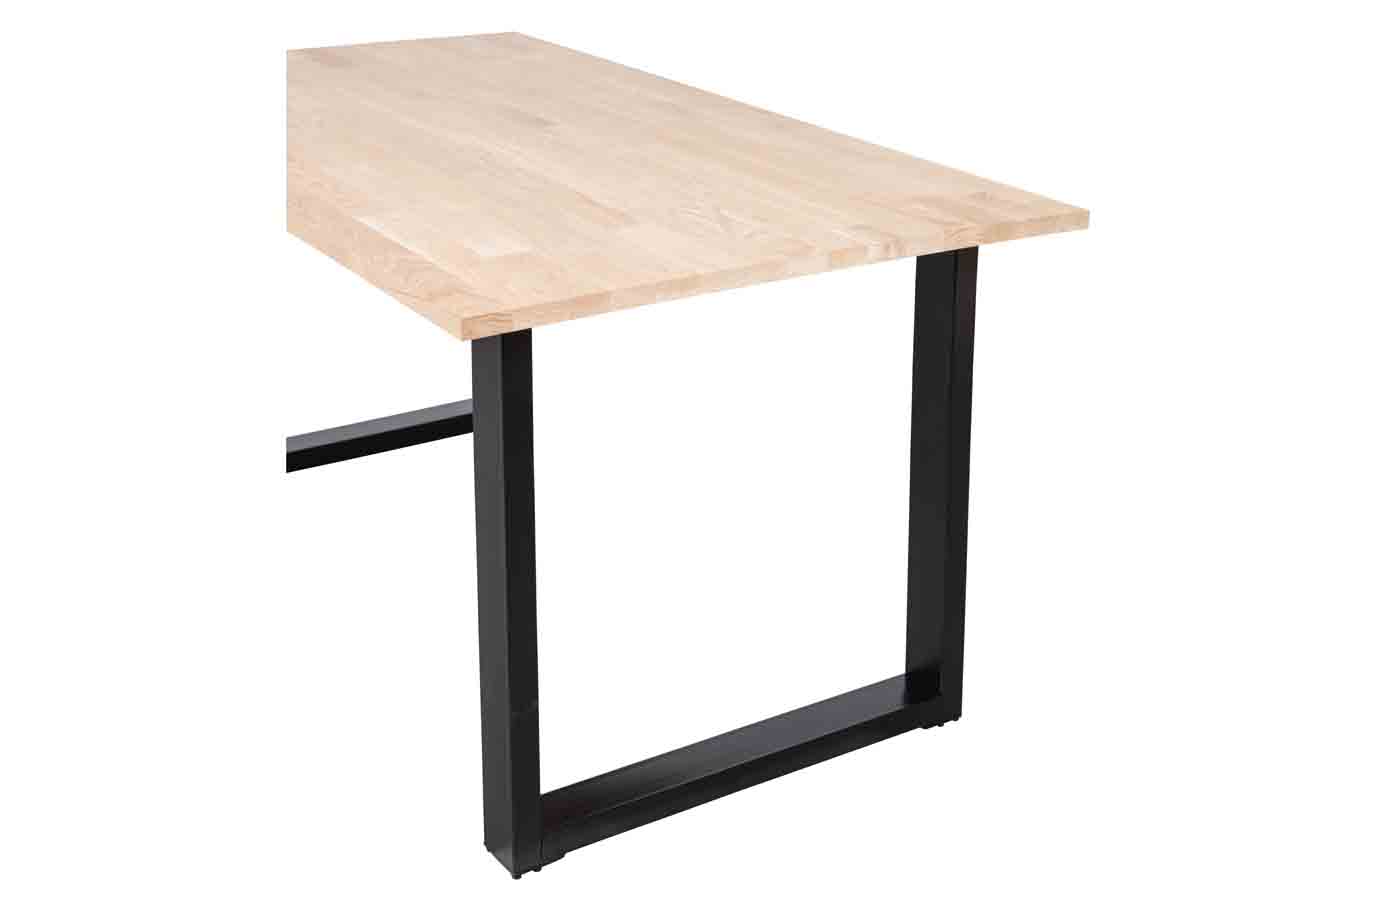 Esstisch mit Eiche Tischplatte und U-Gestell. Oberfläche Natur unbehandelt mit einer schönen Maserung